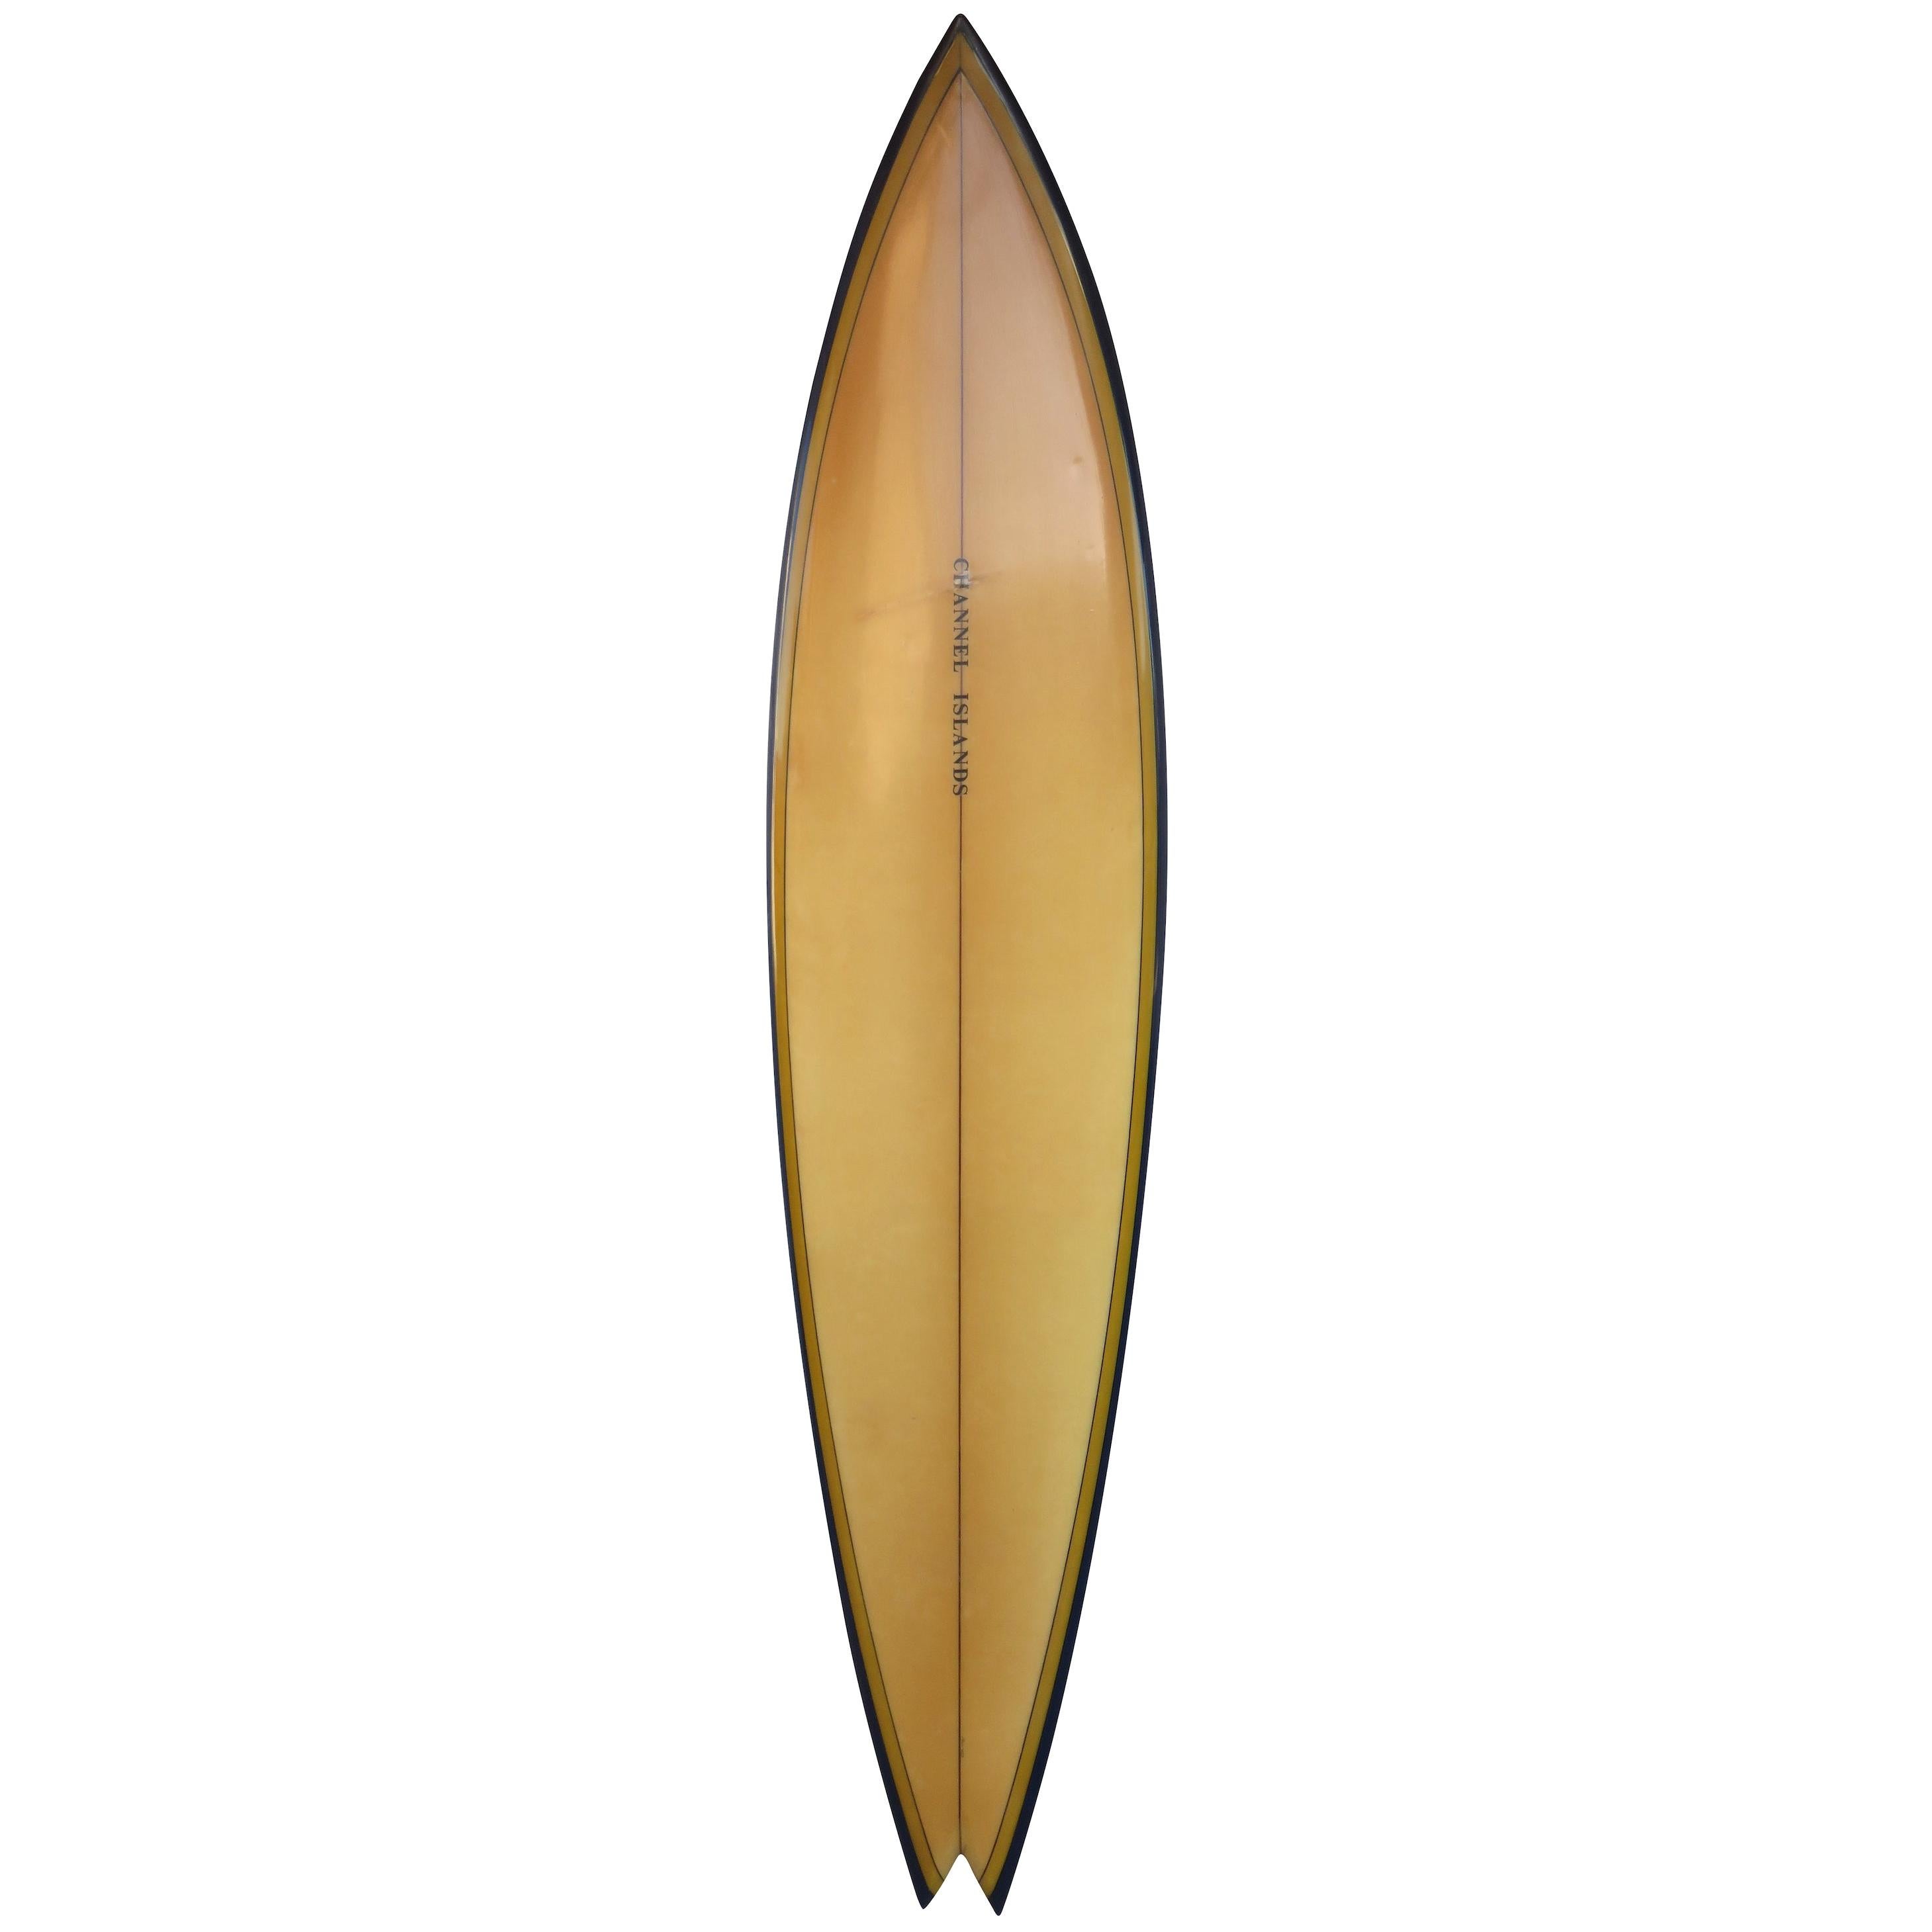 Vintage 1970s Channel Islands Al Merrick Surfboard